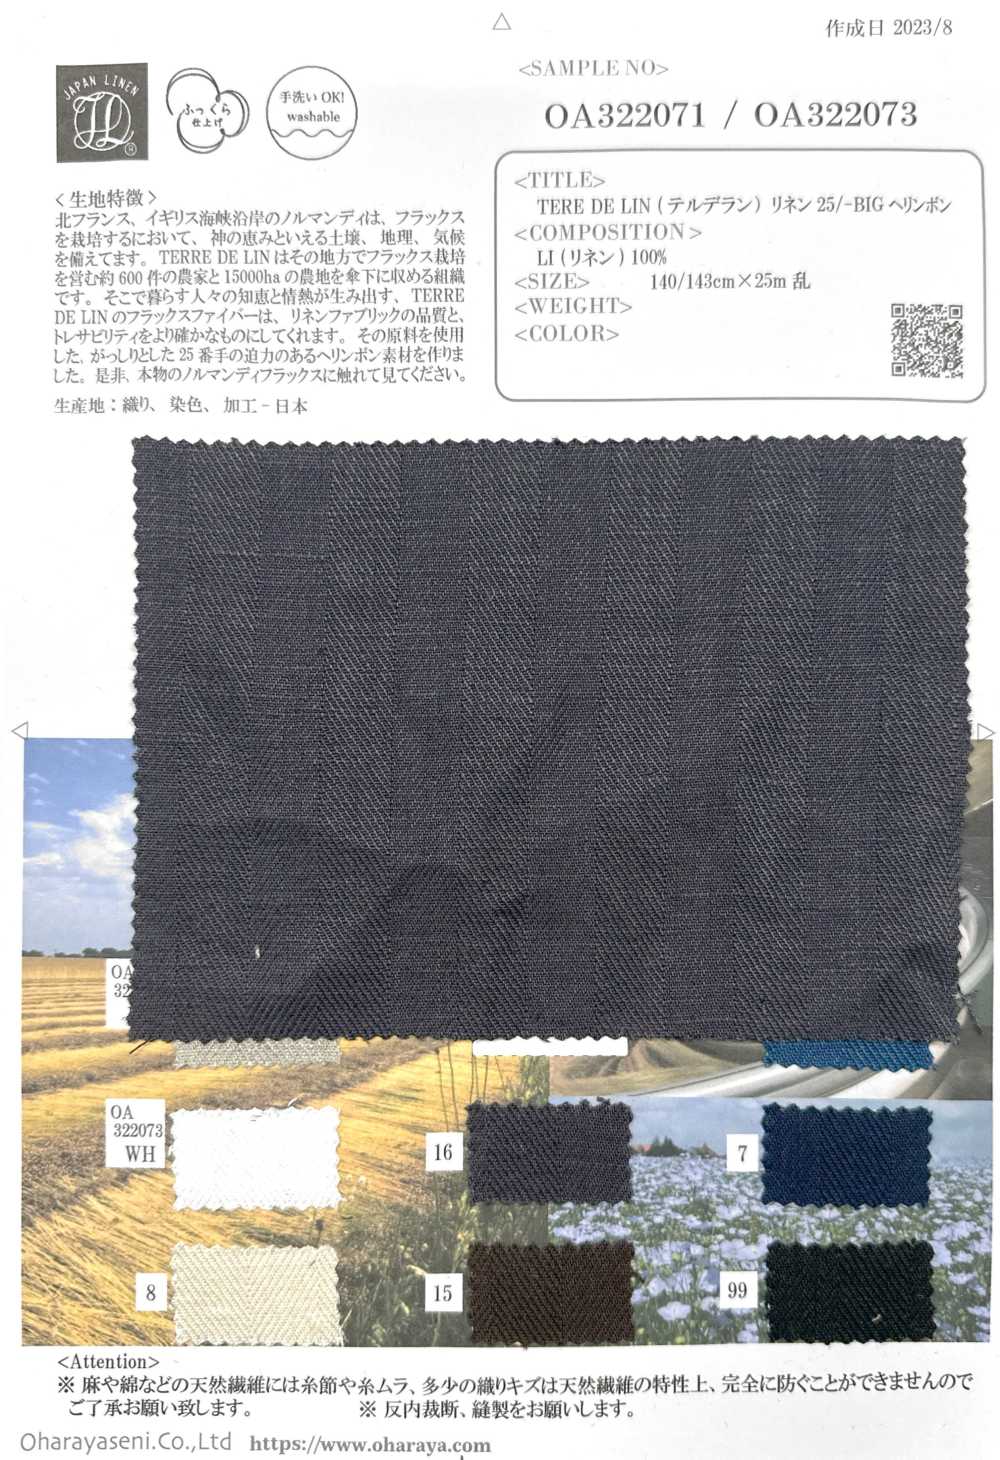 OA322071 TERE DE LIN Lino 25/-GRAN Espiga[Fabrica Textil] Oharayaseni